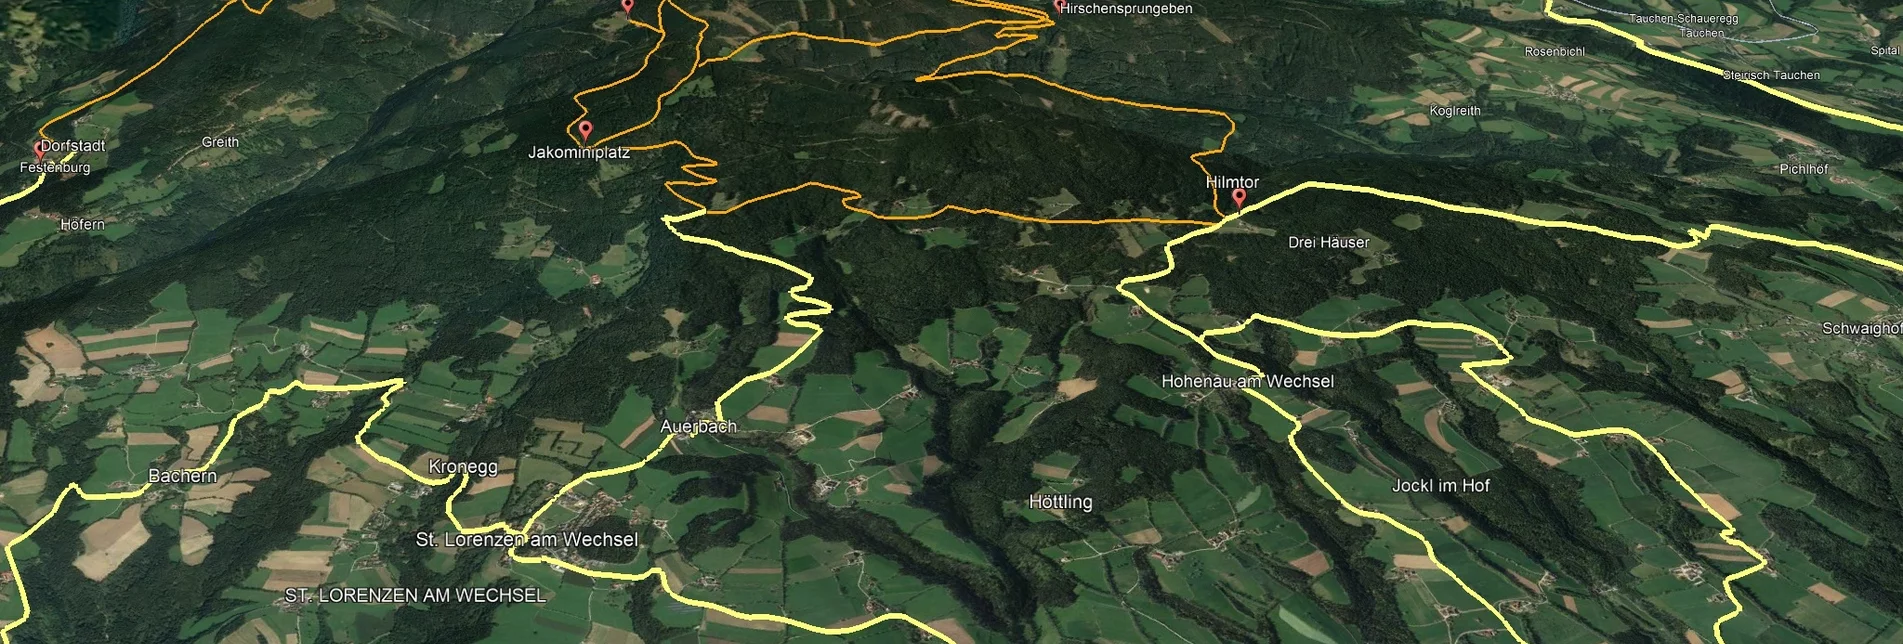 Mountain Biking Styrian Wexl Trails - Thalberger Schwaig Route - Touren-Impression #1 | © Verein Tourismusentwicklung Steirischer Wechsel